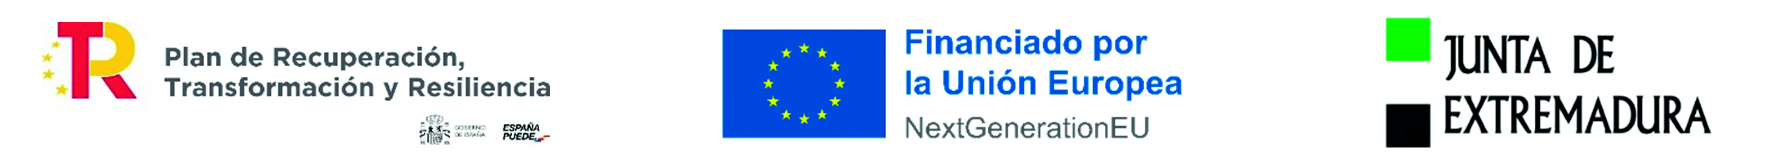 PLAN DE RECUPERACION - NEXTGENERATION EU - JUNTA DE EXTREMADURA